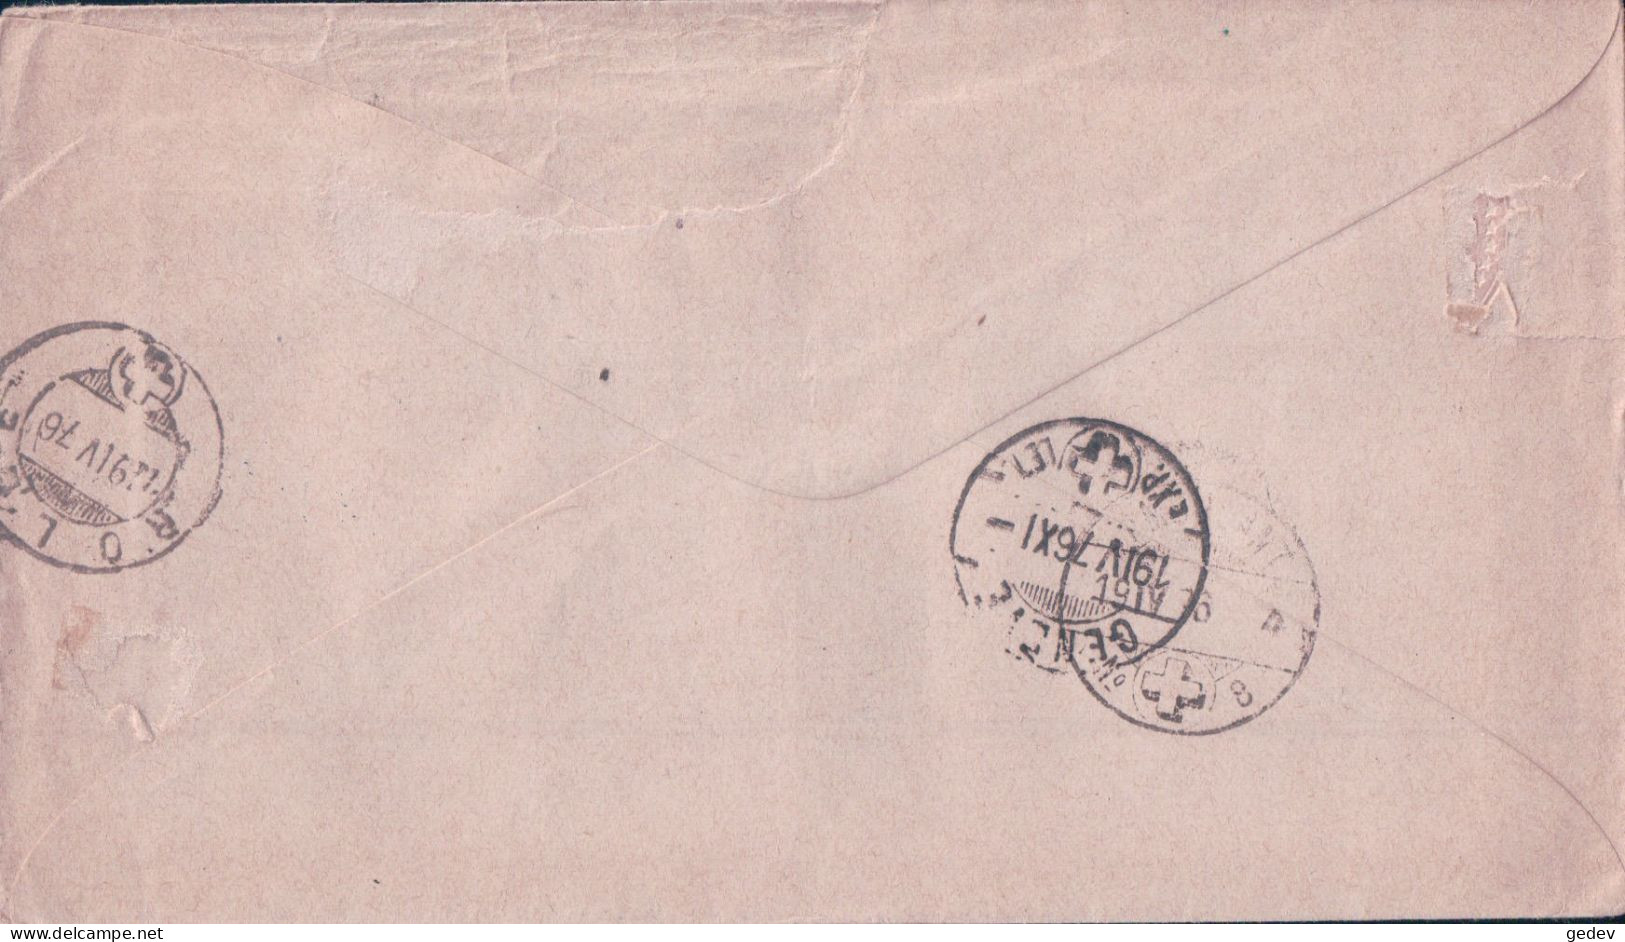 Suisse, Lettre Entier Postal 5 Ct Brun + 3 Timbres, Gimel - Pontarlier - Paris, 18 IV 1876 - Stamped Stationery